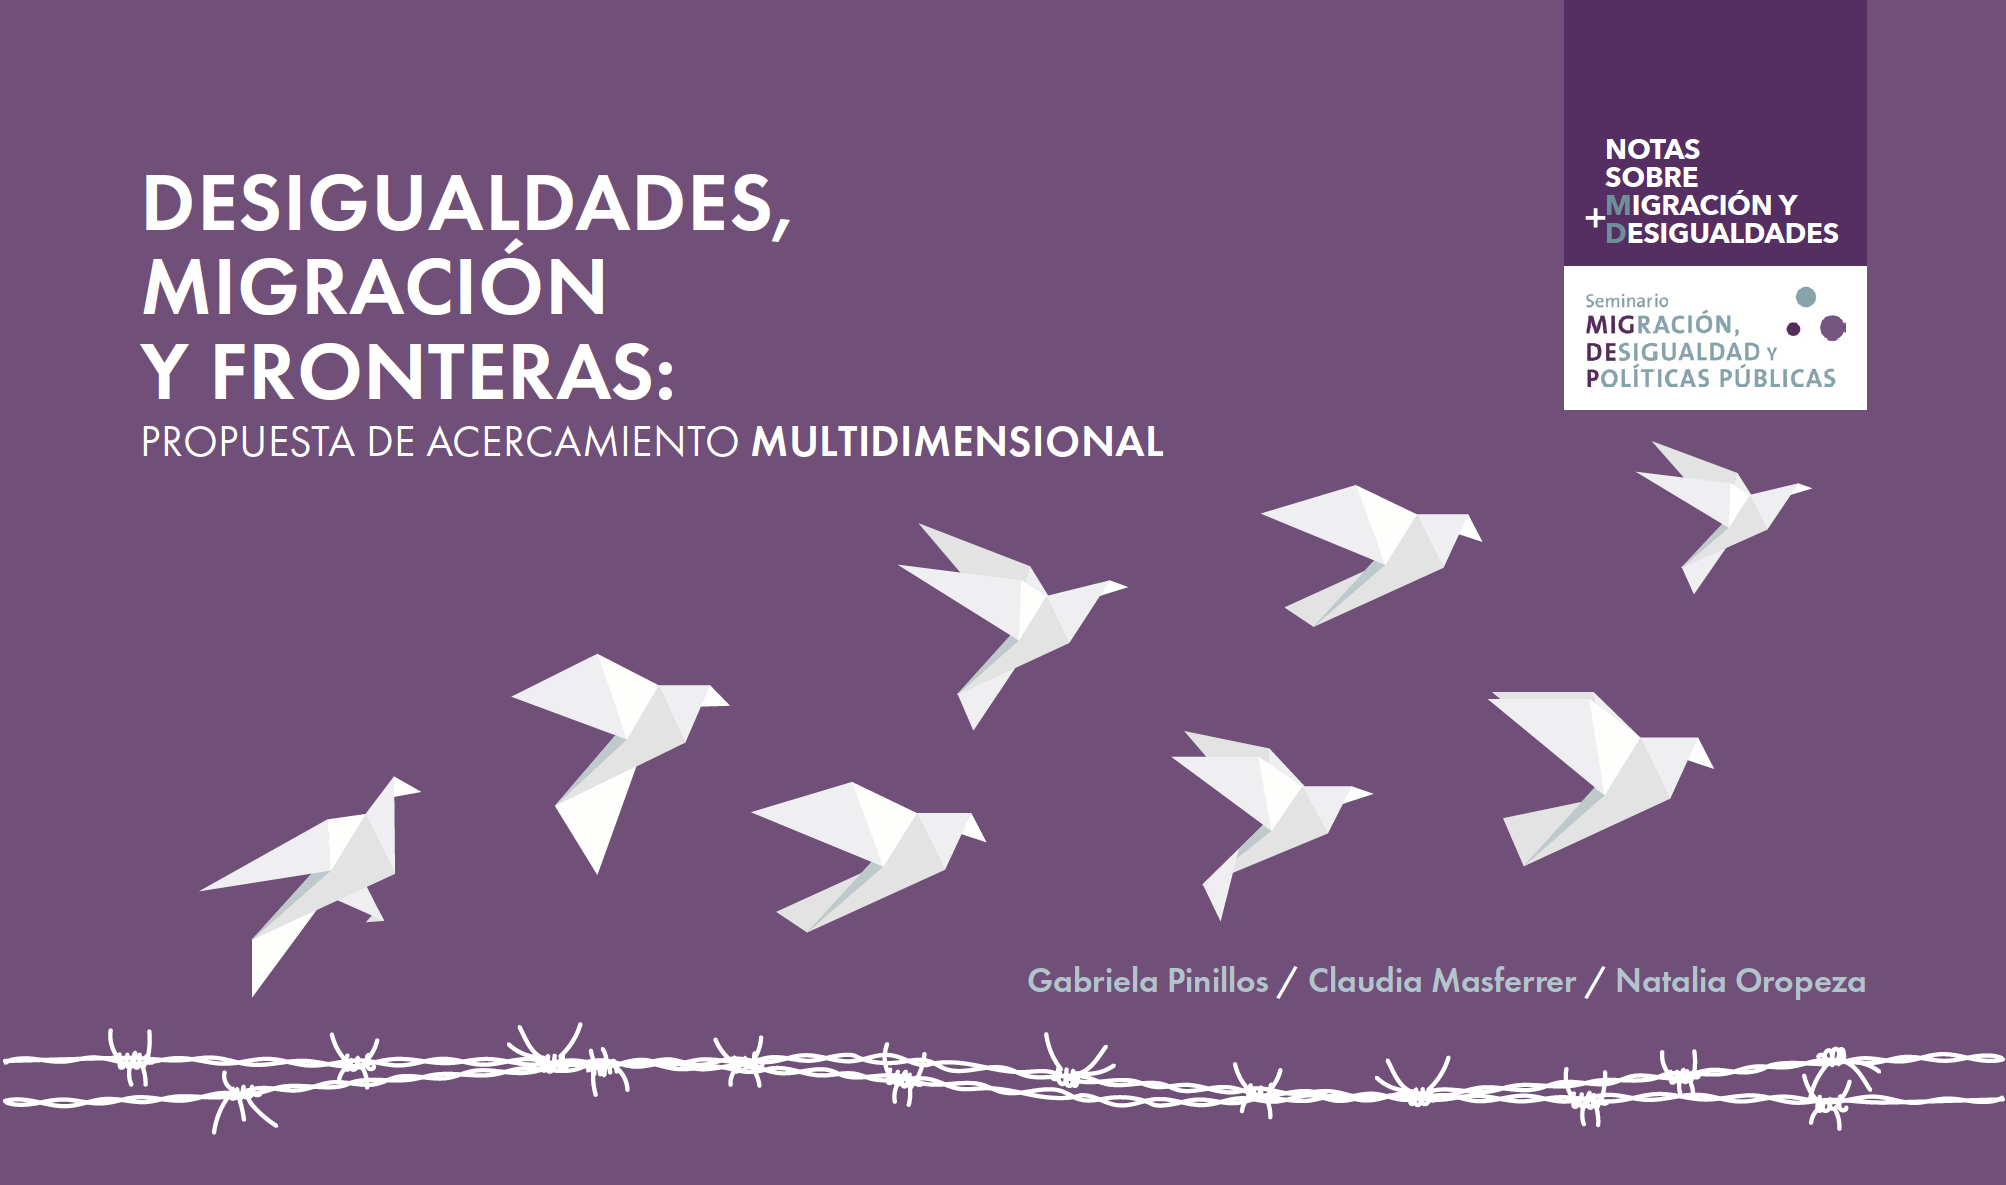 Desigualdades, Migración y Fronteras: Propuestas de acercamiento multidemensional